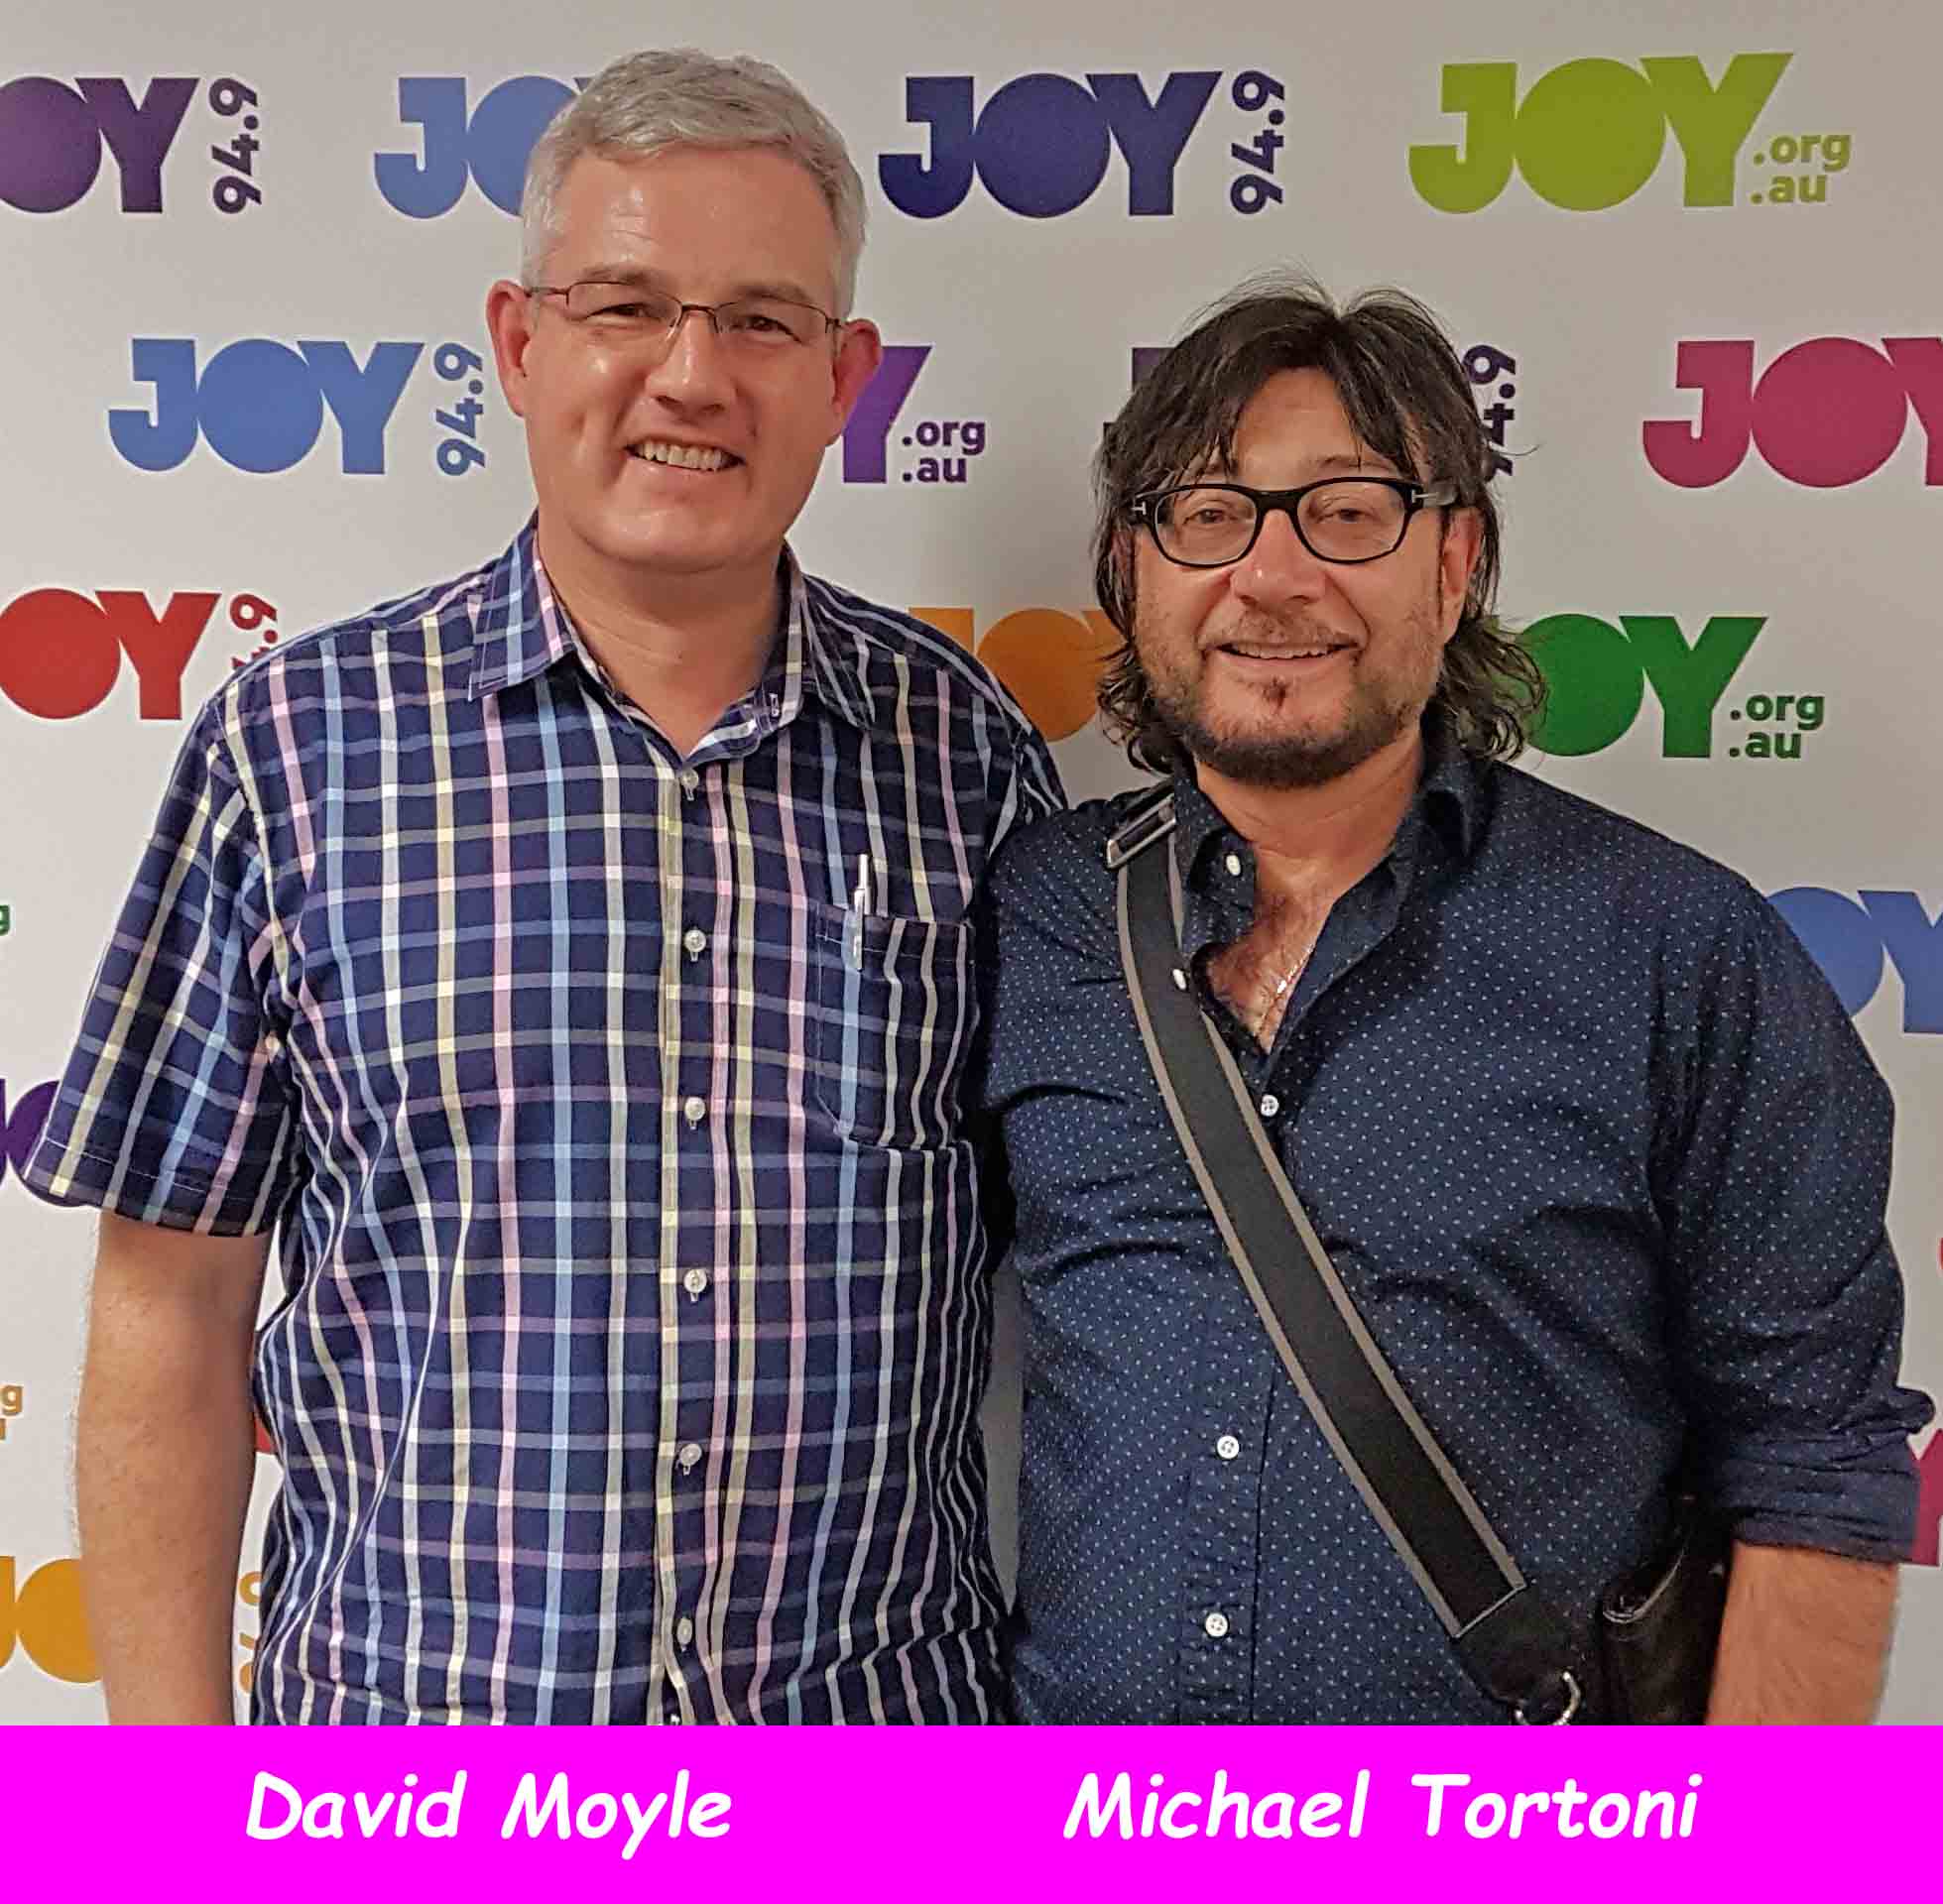 Michael Tortoni’s MIJF 2018